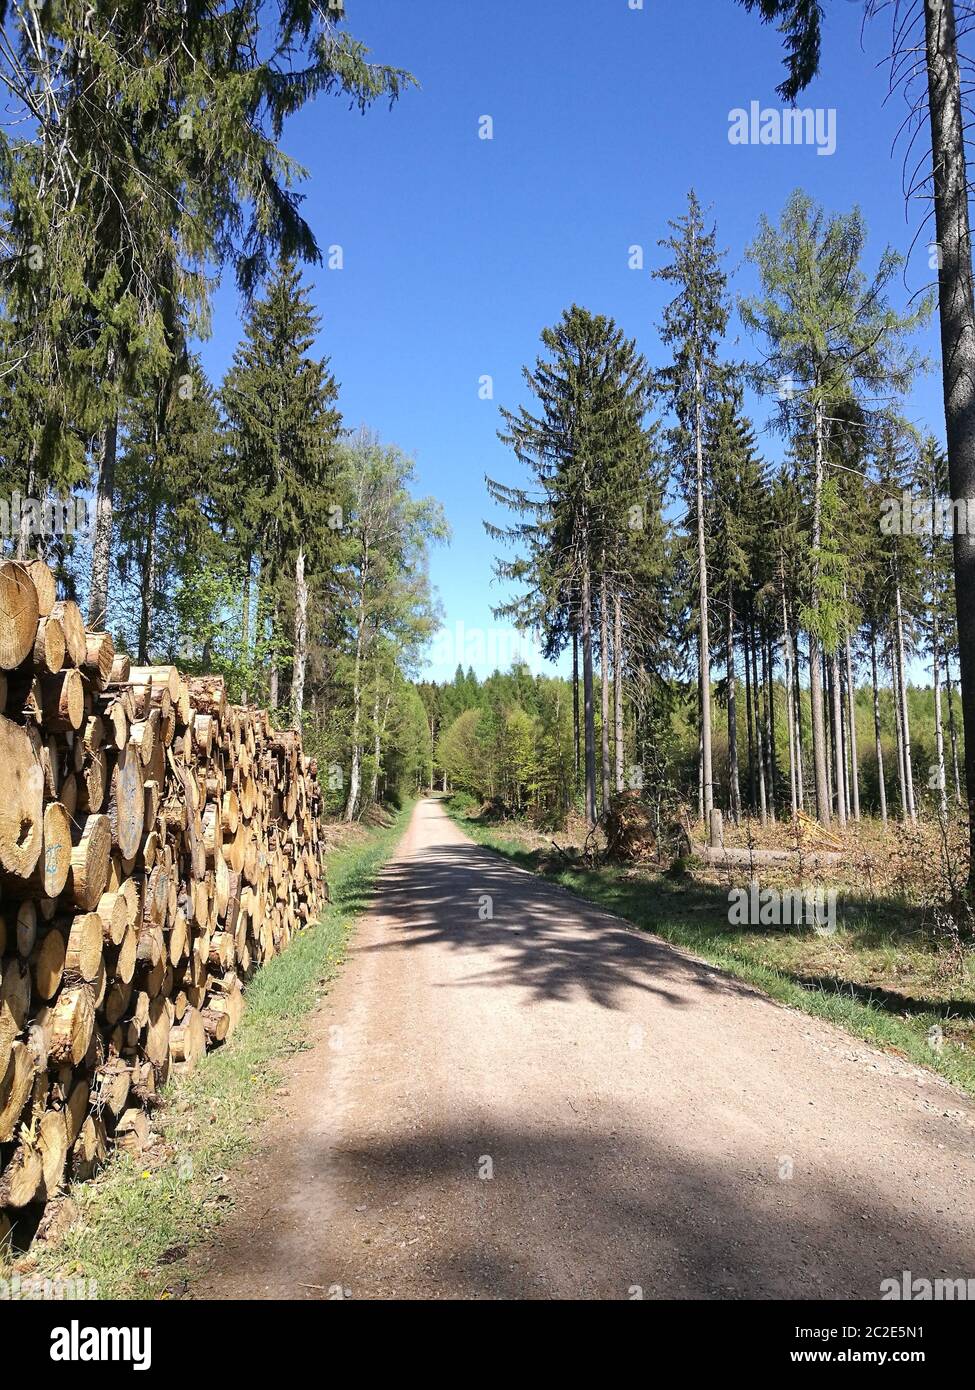 Ein schnurgerader Forstweg durch einen Fichtenwald an einem sonnigen Tag im Frühling, große Holzstapel am Rand des Weges, blauer, wolkenloser Himmel, Stock Photo